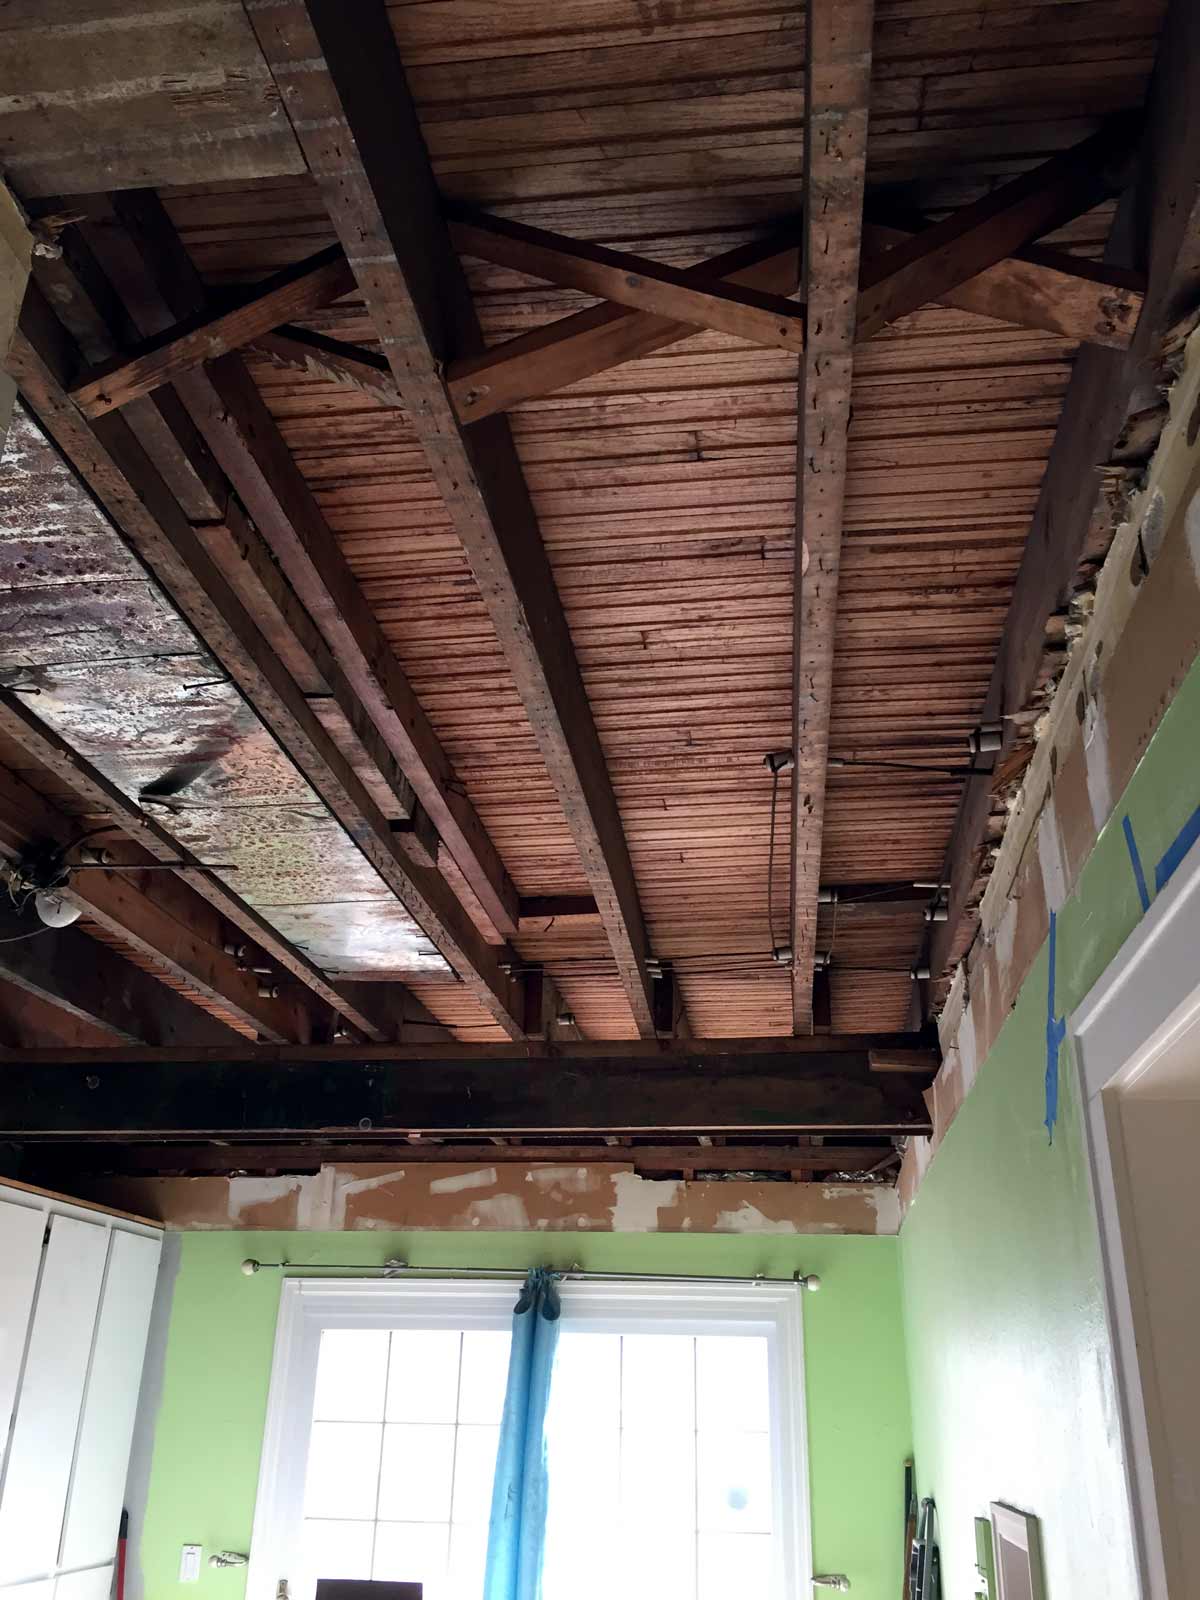 Exposed beams under drop ceiling